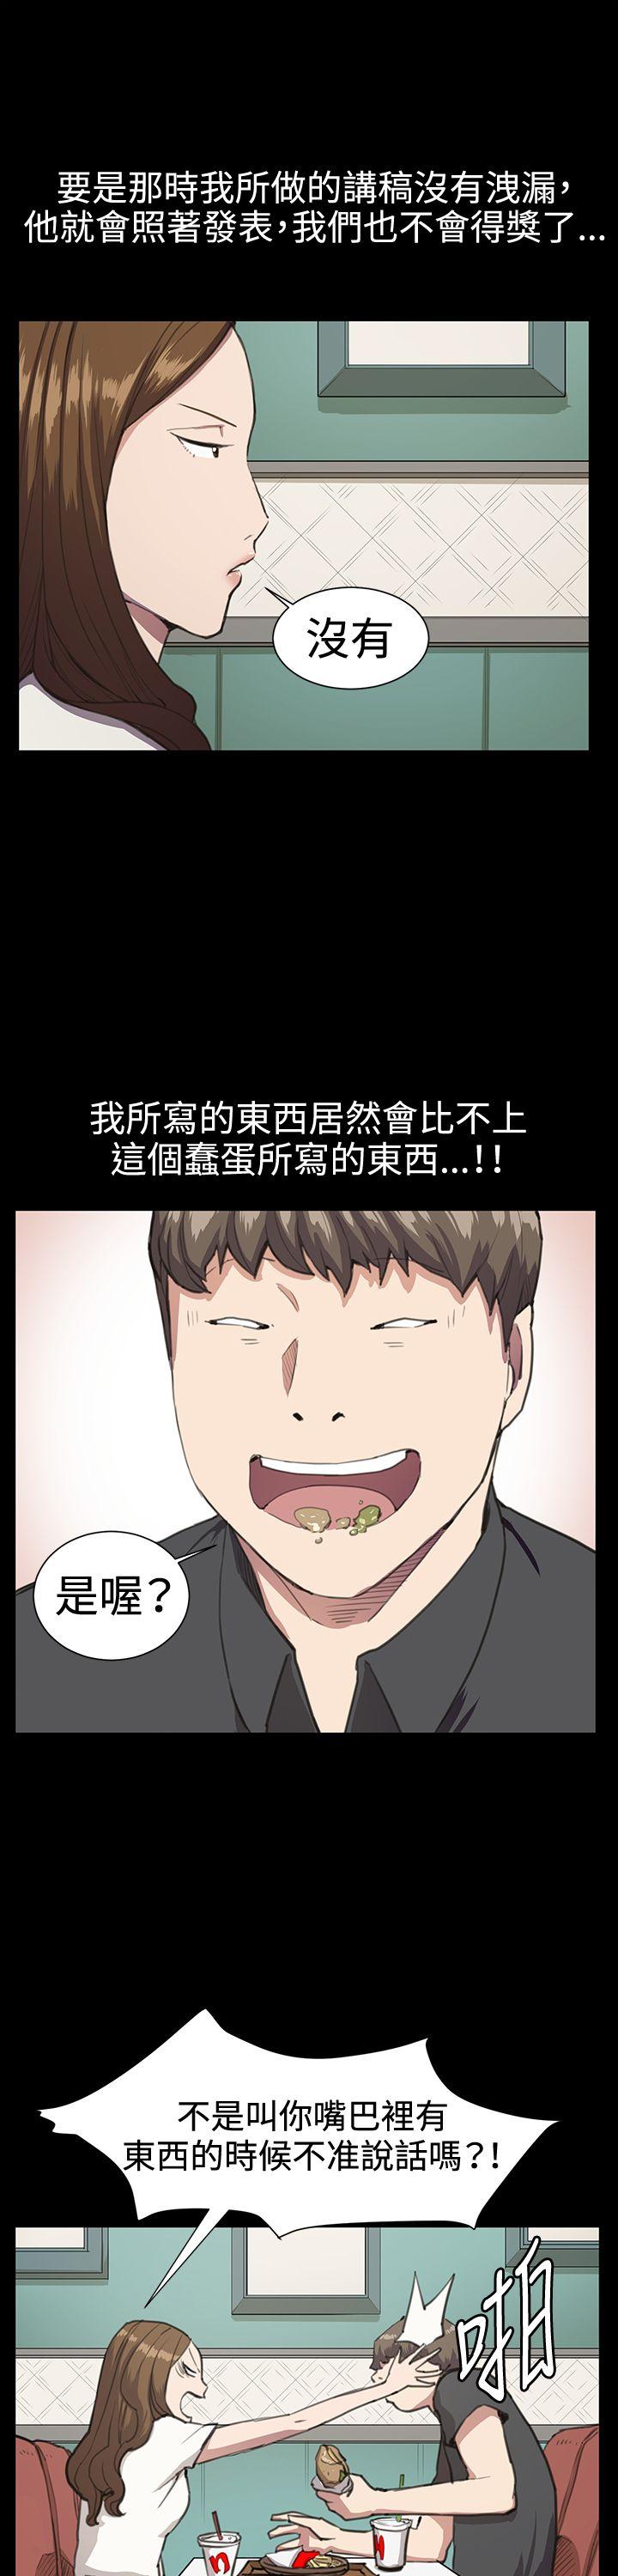 韩国污漫画 深夜便利店 第16话 26